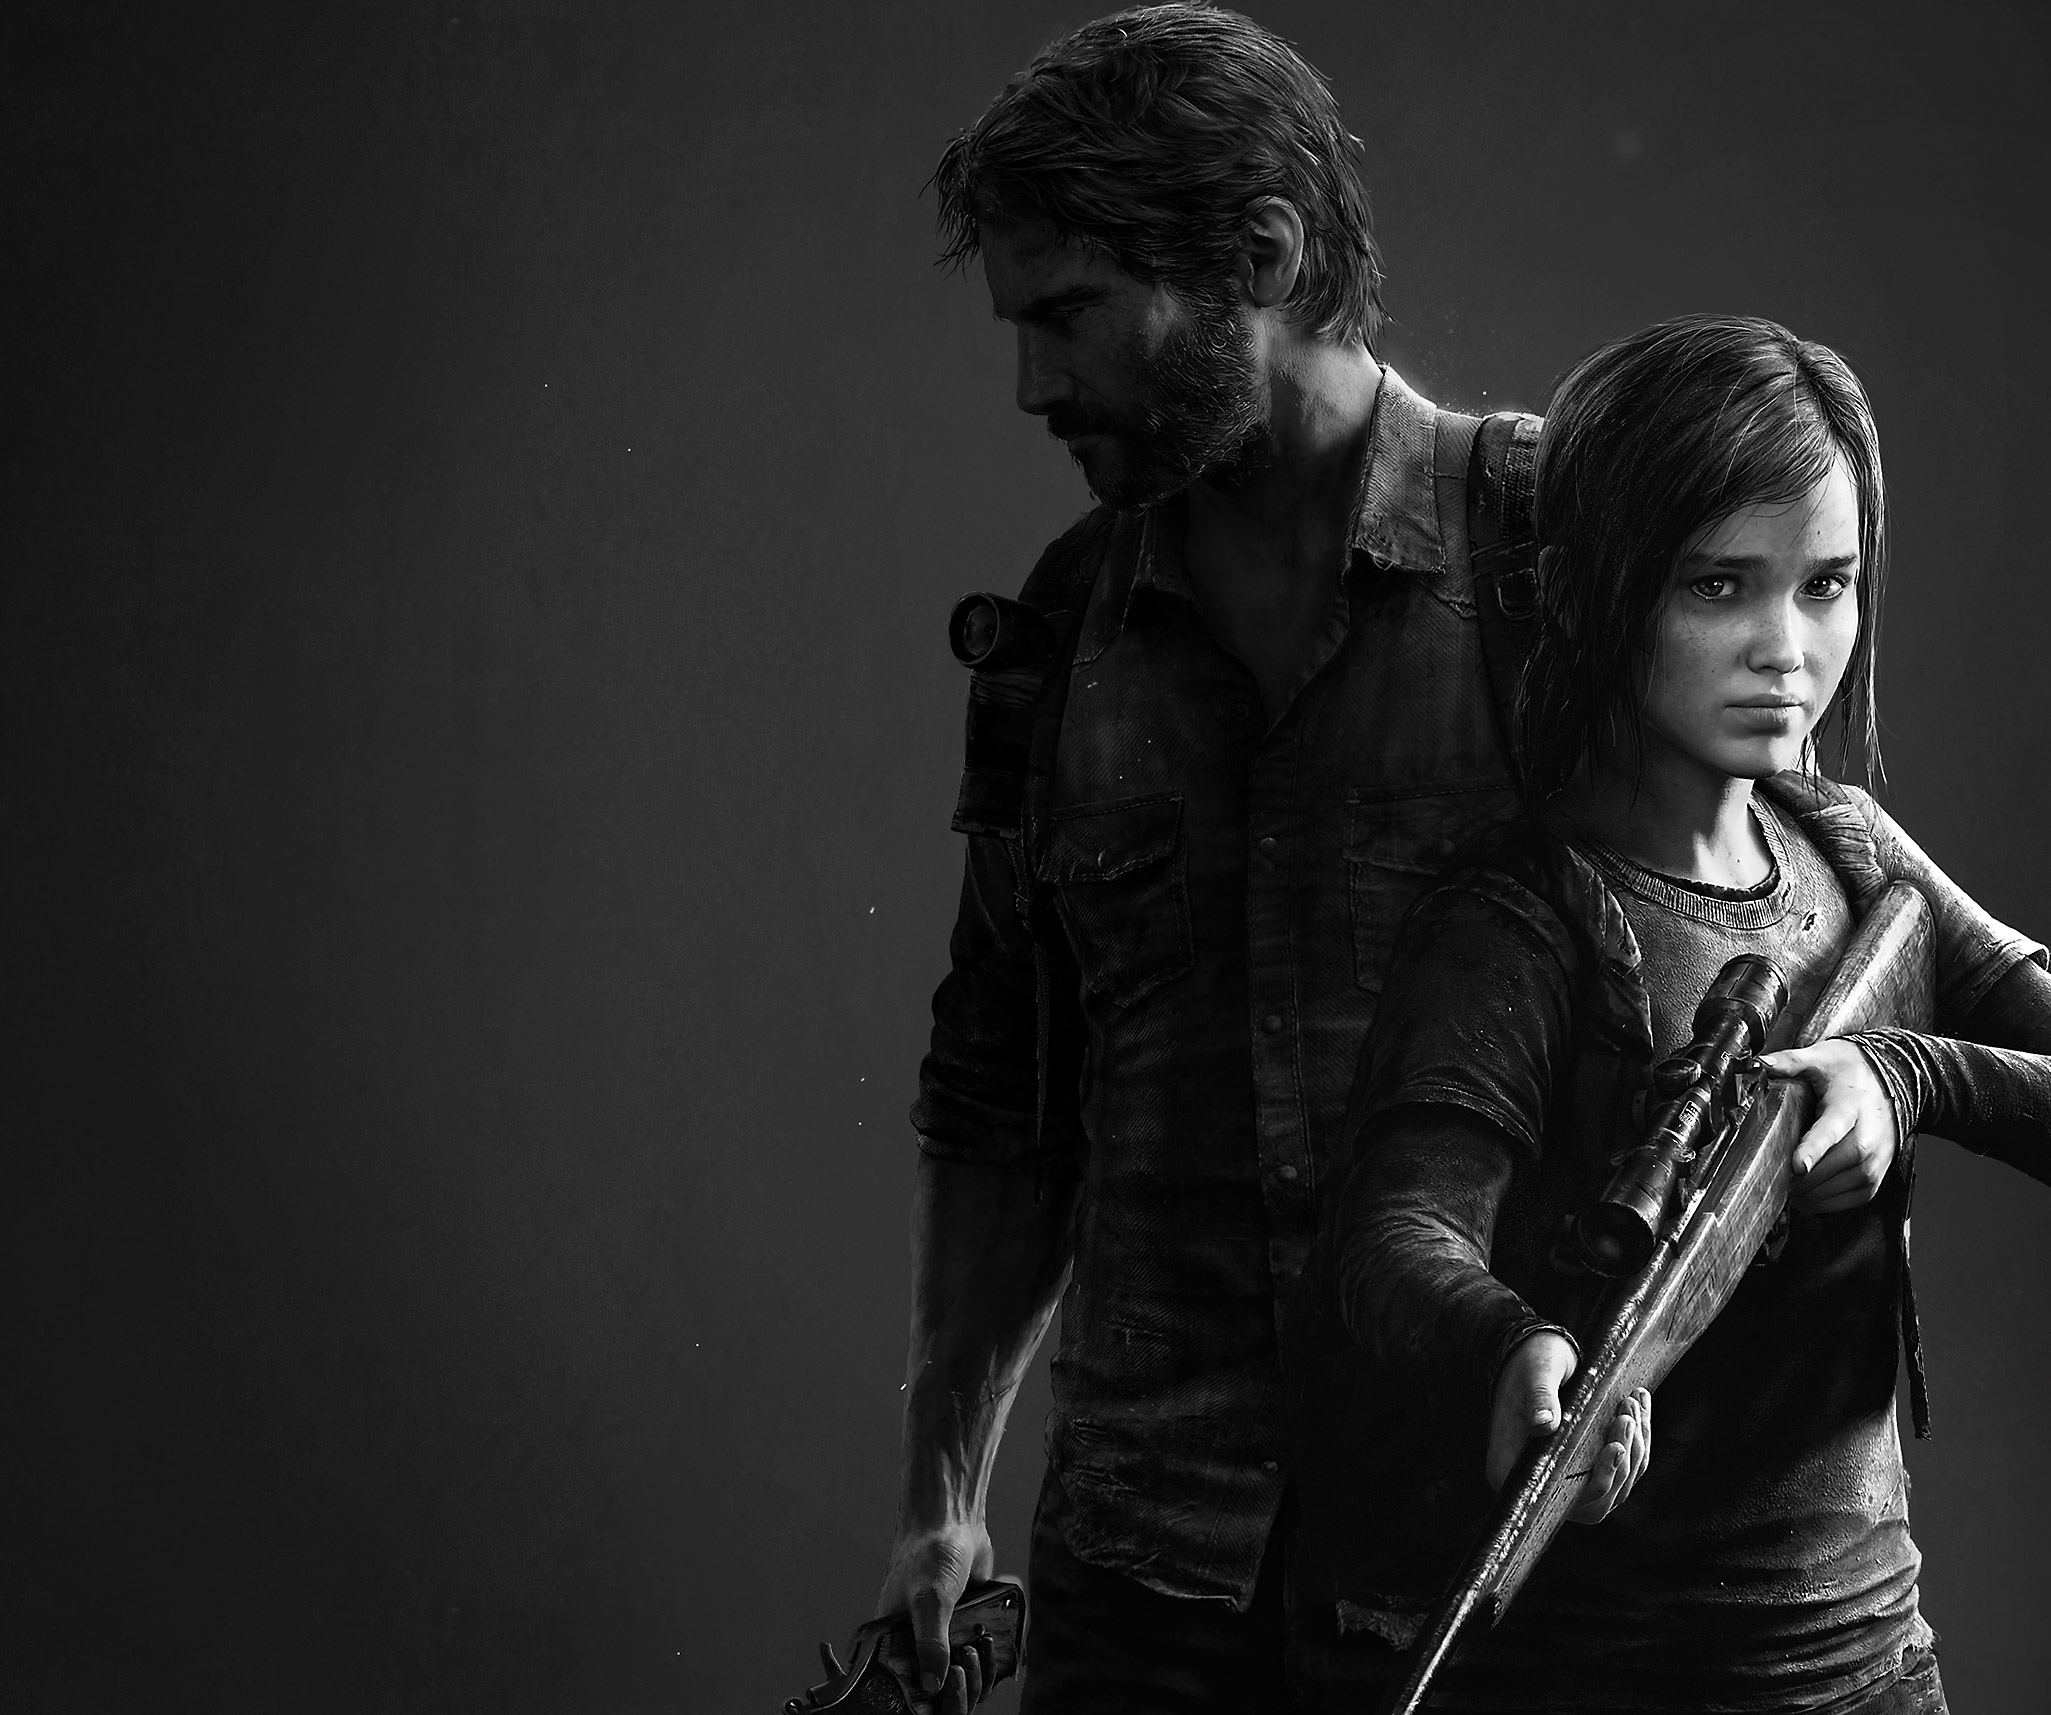 A The Last of Us Remastered fő grafikája a főszereplőket, Joelt és Ellie-t ábrázolja fekete-fehérben.